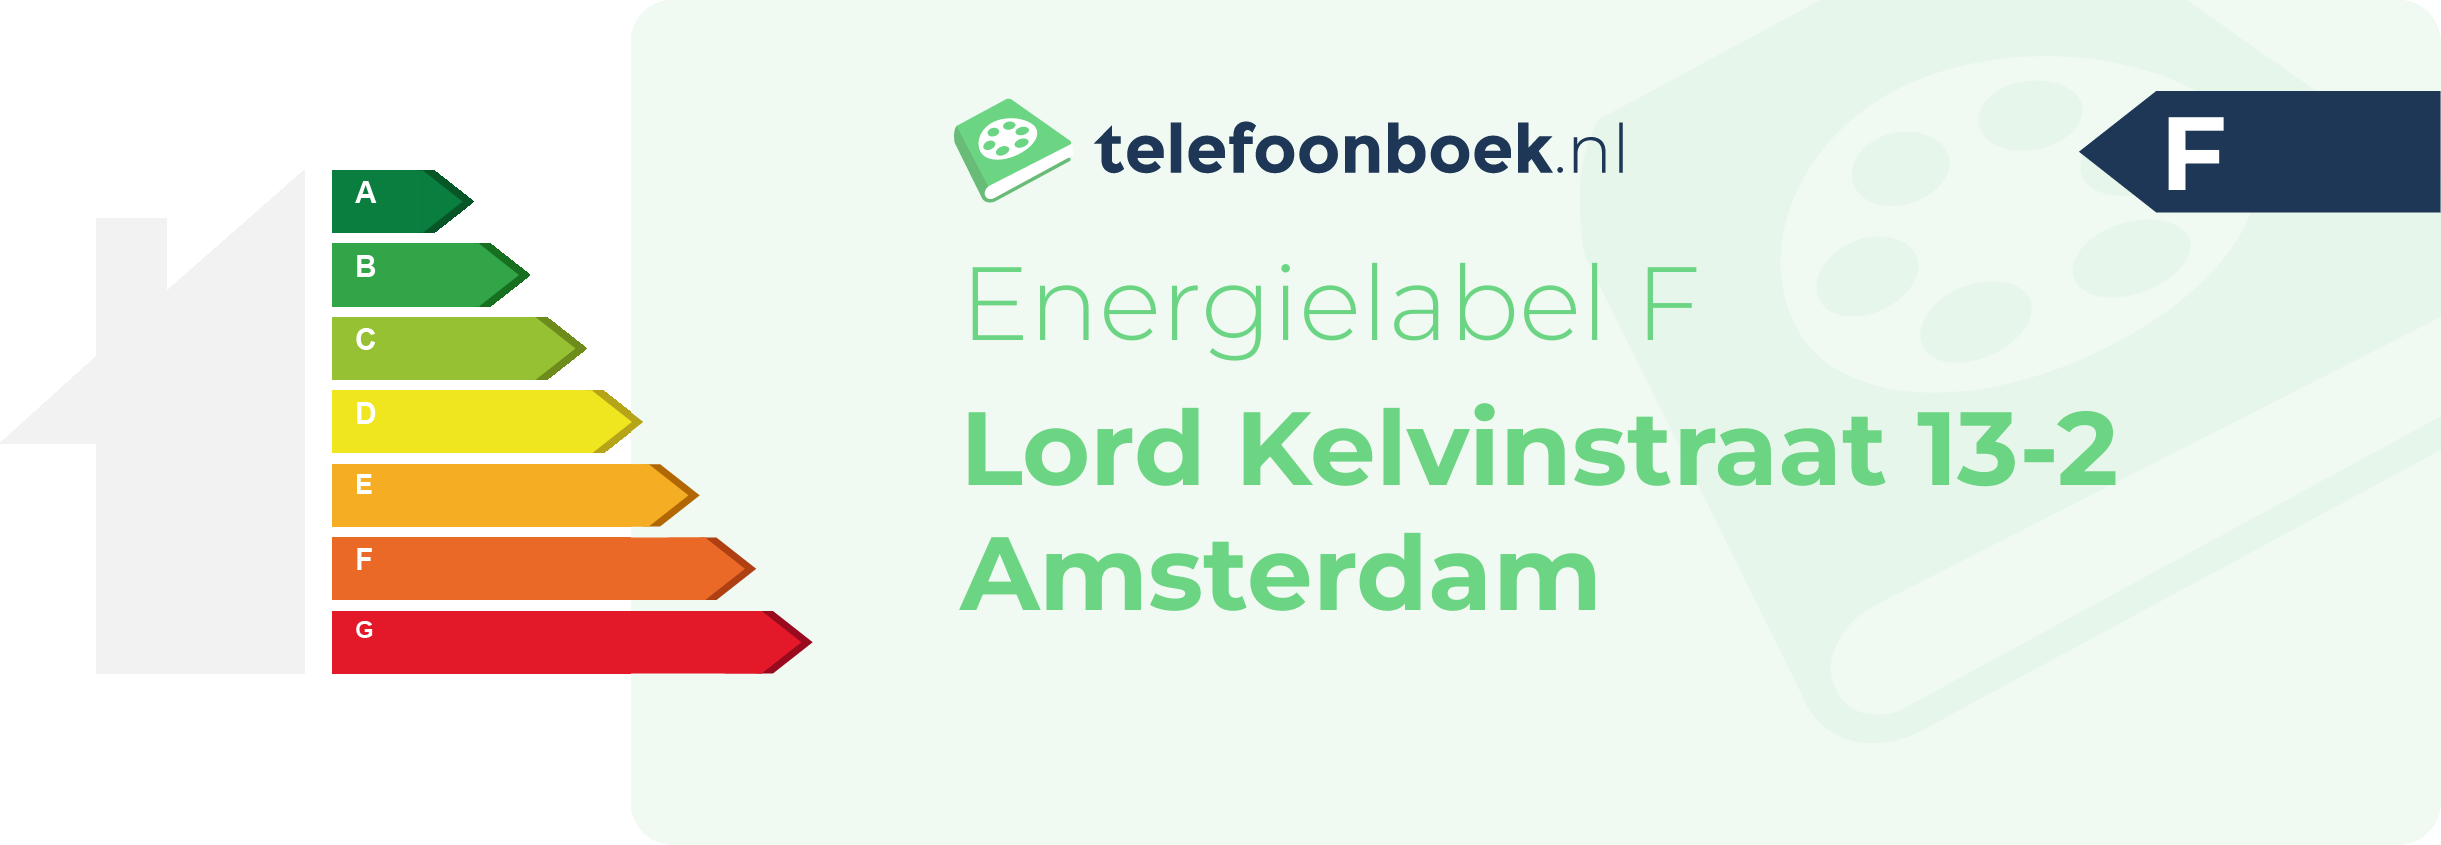 Energielabel Lord Kelvinstraat 13-2 Amsterdam